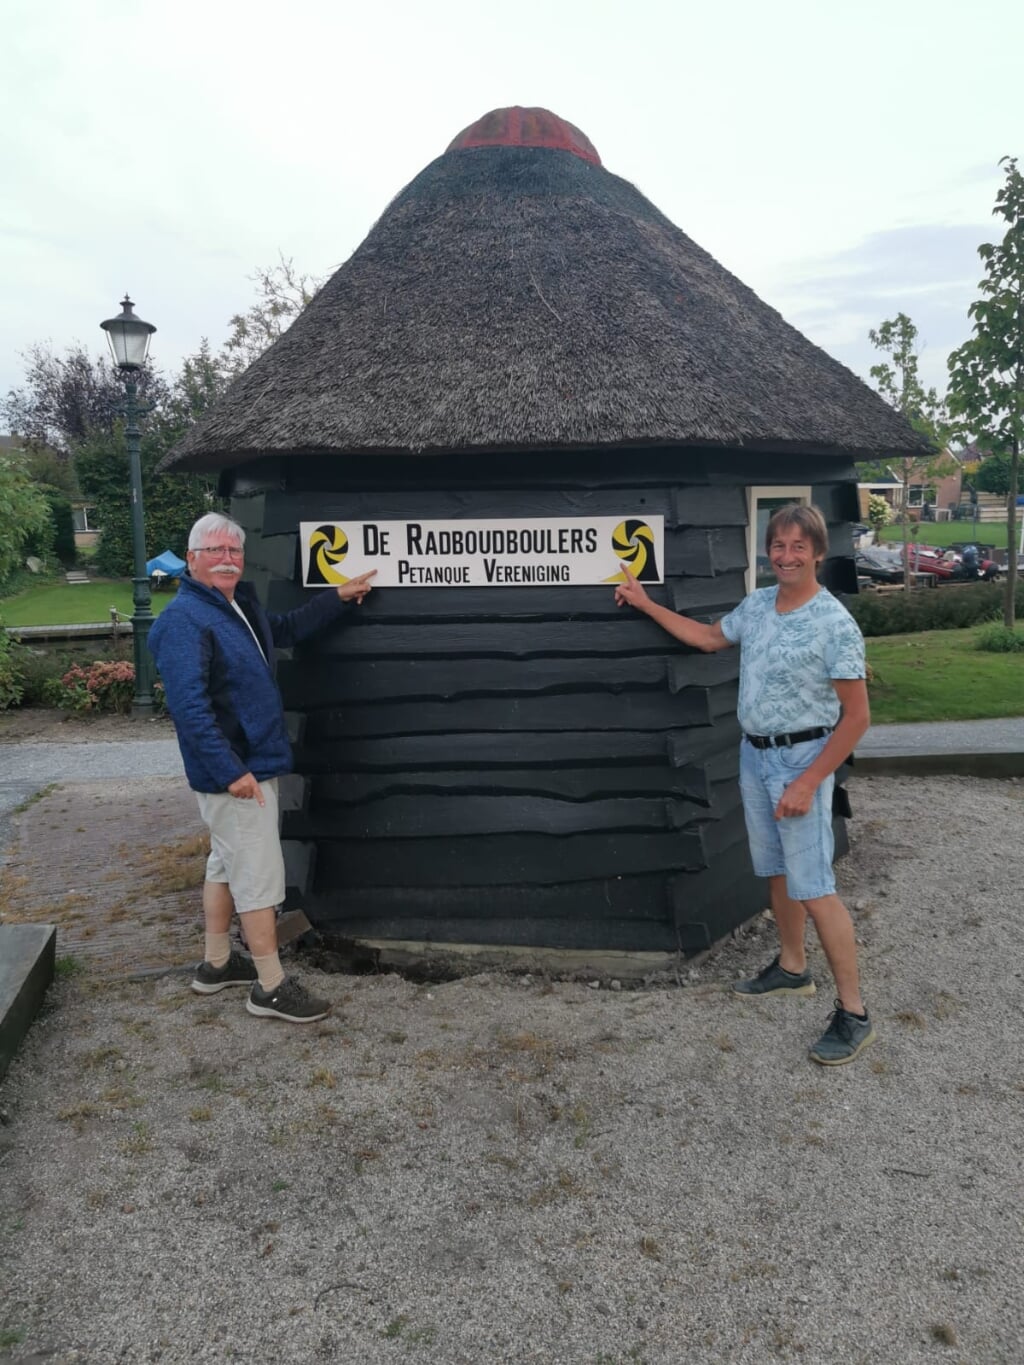 MEDEMBLIK - De Medemblikker Radboud boule club bestaat 35 jaar en heeft nu een herkenningsbord.